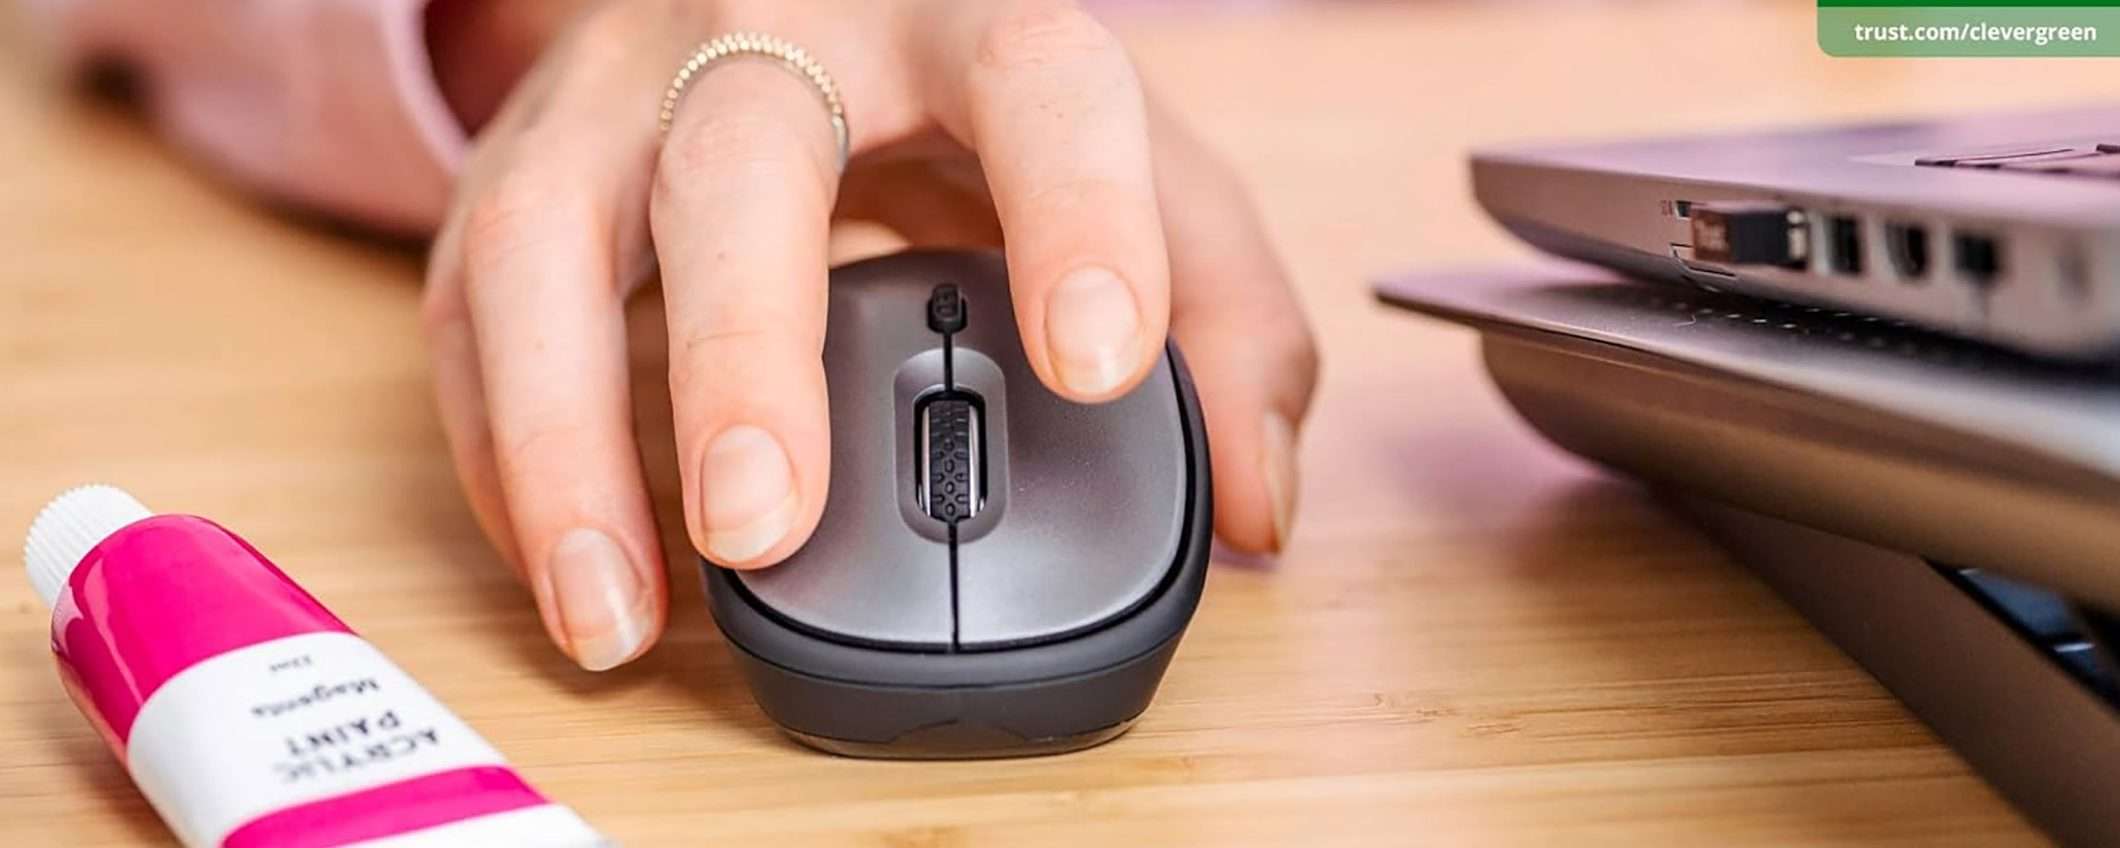 Mouse wireless Trust a 8€: PREZZO STRACCIATO su Amazon